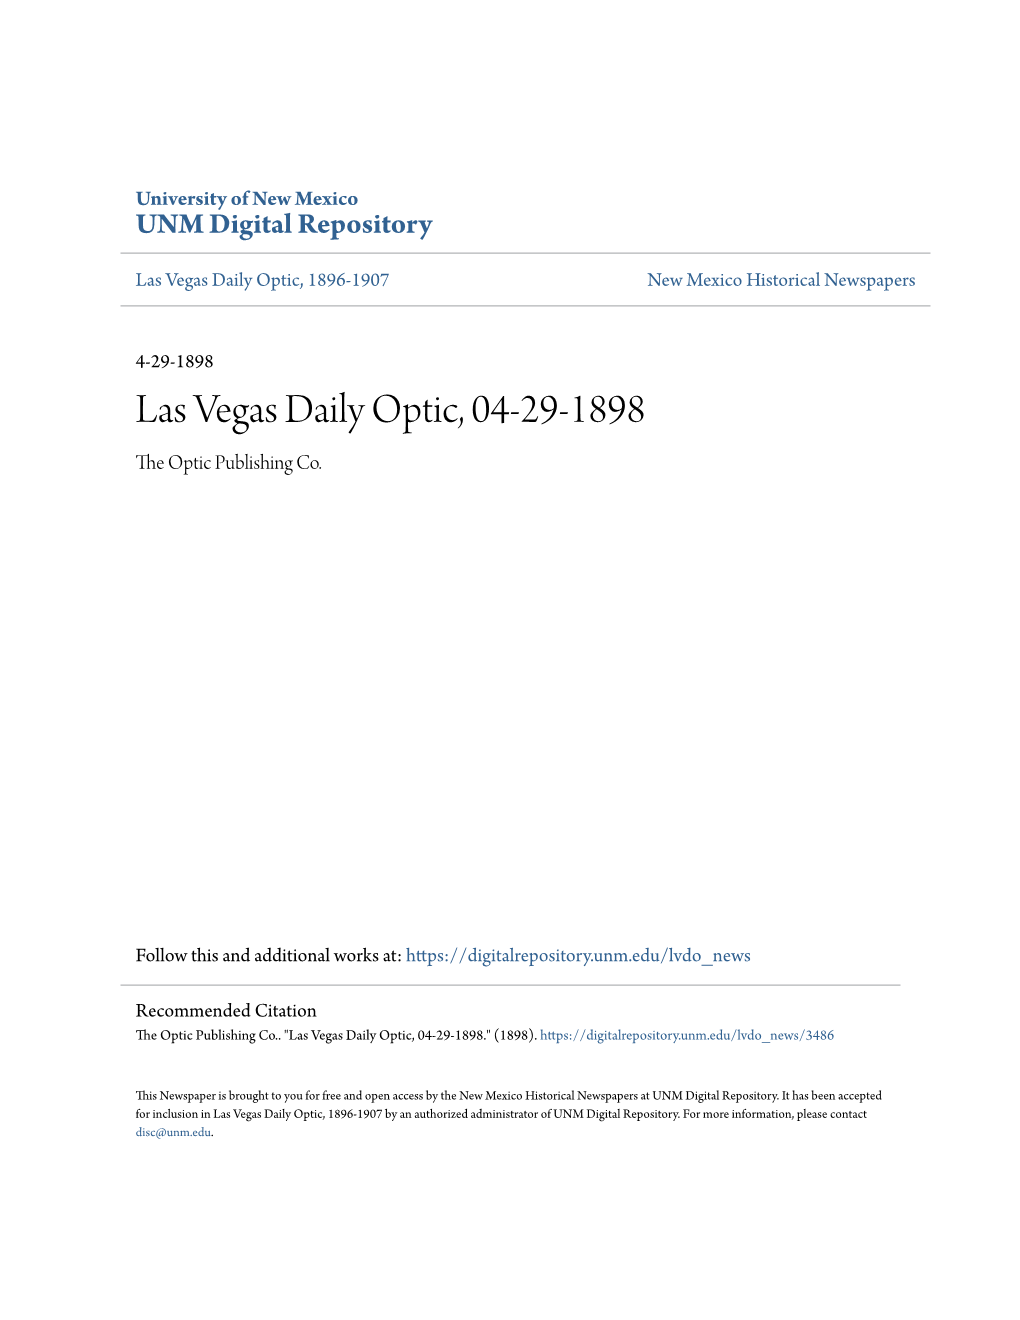 Las Vegas Daily Optic, 04-29-1898 the Optic Publishing Co